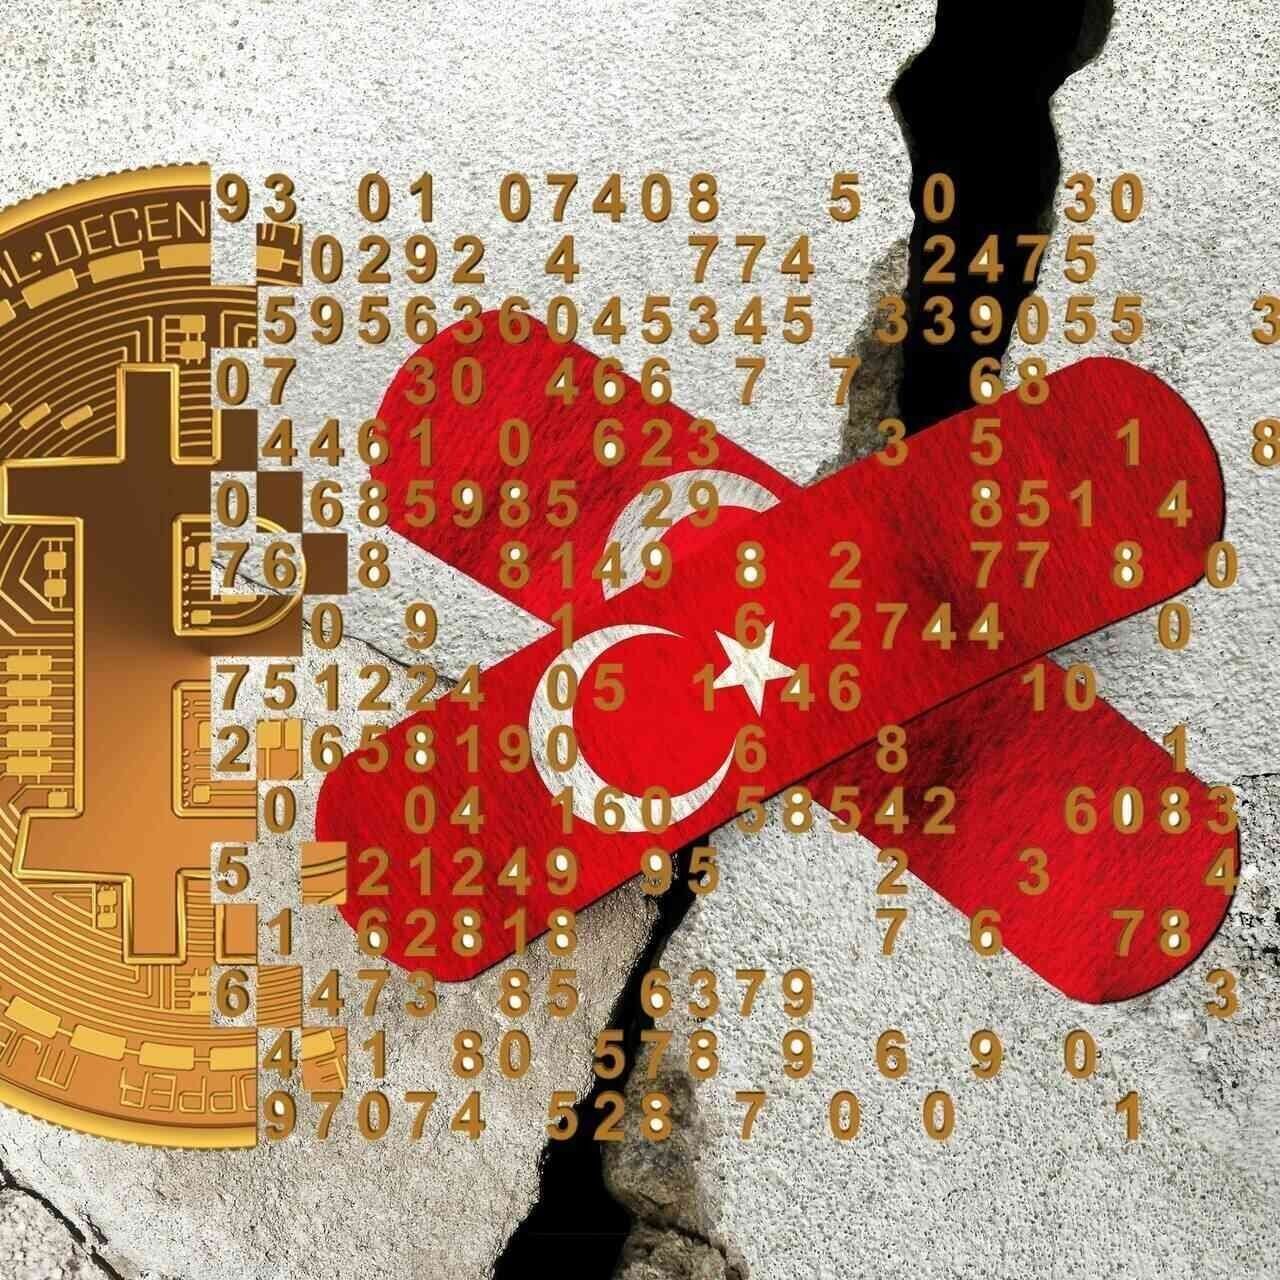 Cryptocurrencies: ຫຼັງຈາກແຜ່ນດິນໄຫວຮຸນແຮງທີ່ເກີດຂຶ້ນໃນພາກໃຕ້ຂອງ Anatolia ລະຫວ່າງວັນທີ 5 ແລະ 6 ເດືອນກຸມພາ 2023, ອຸດສາຫະກໍາ cryptocurrency ແລະ Blockchain ທົ່ວໂລກຍັງໃຫ້ຄໍາຫມັ້ນສັນຍາທີ່ຈະຊ່ວຍເຫຼືອຜູ້ເຄາະຮ້າຍດ້ວຍການບໍລິຈາກຂະຫນາດໃຫຍ່.